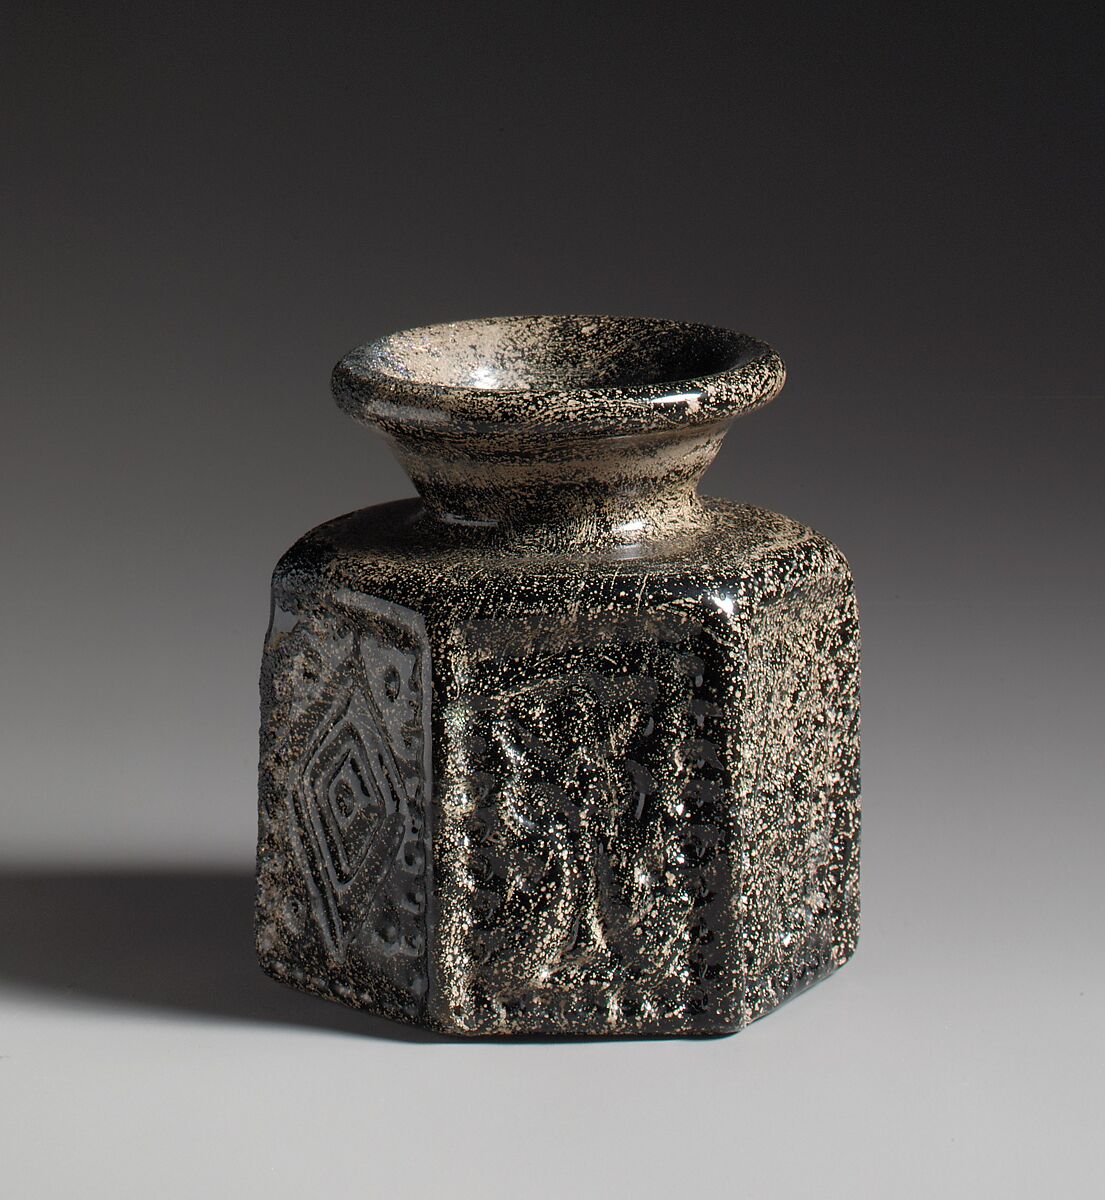 Hexagonal Pilgrim's Jar with Jewish Symbol, Mold-blown glass, Byzantine 